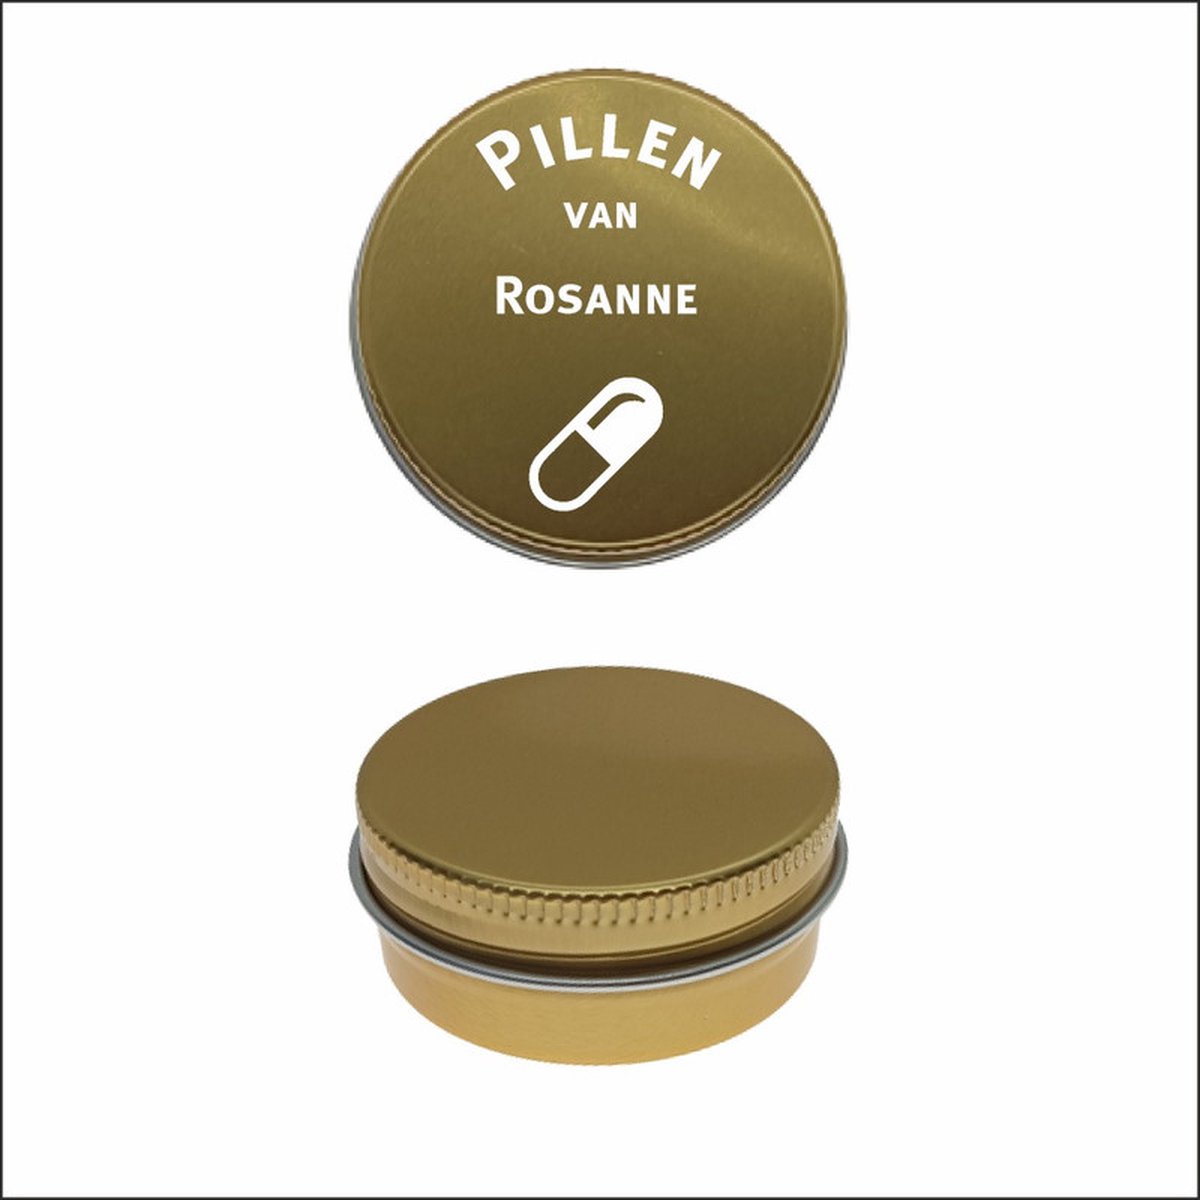 Pillen Blikje Met Naam Gravering - Rosanne